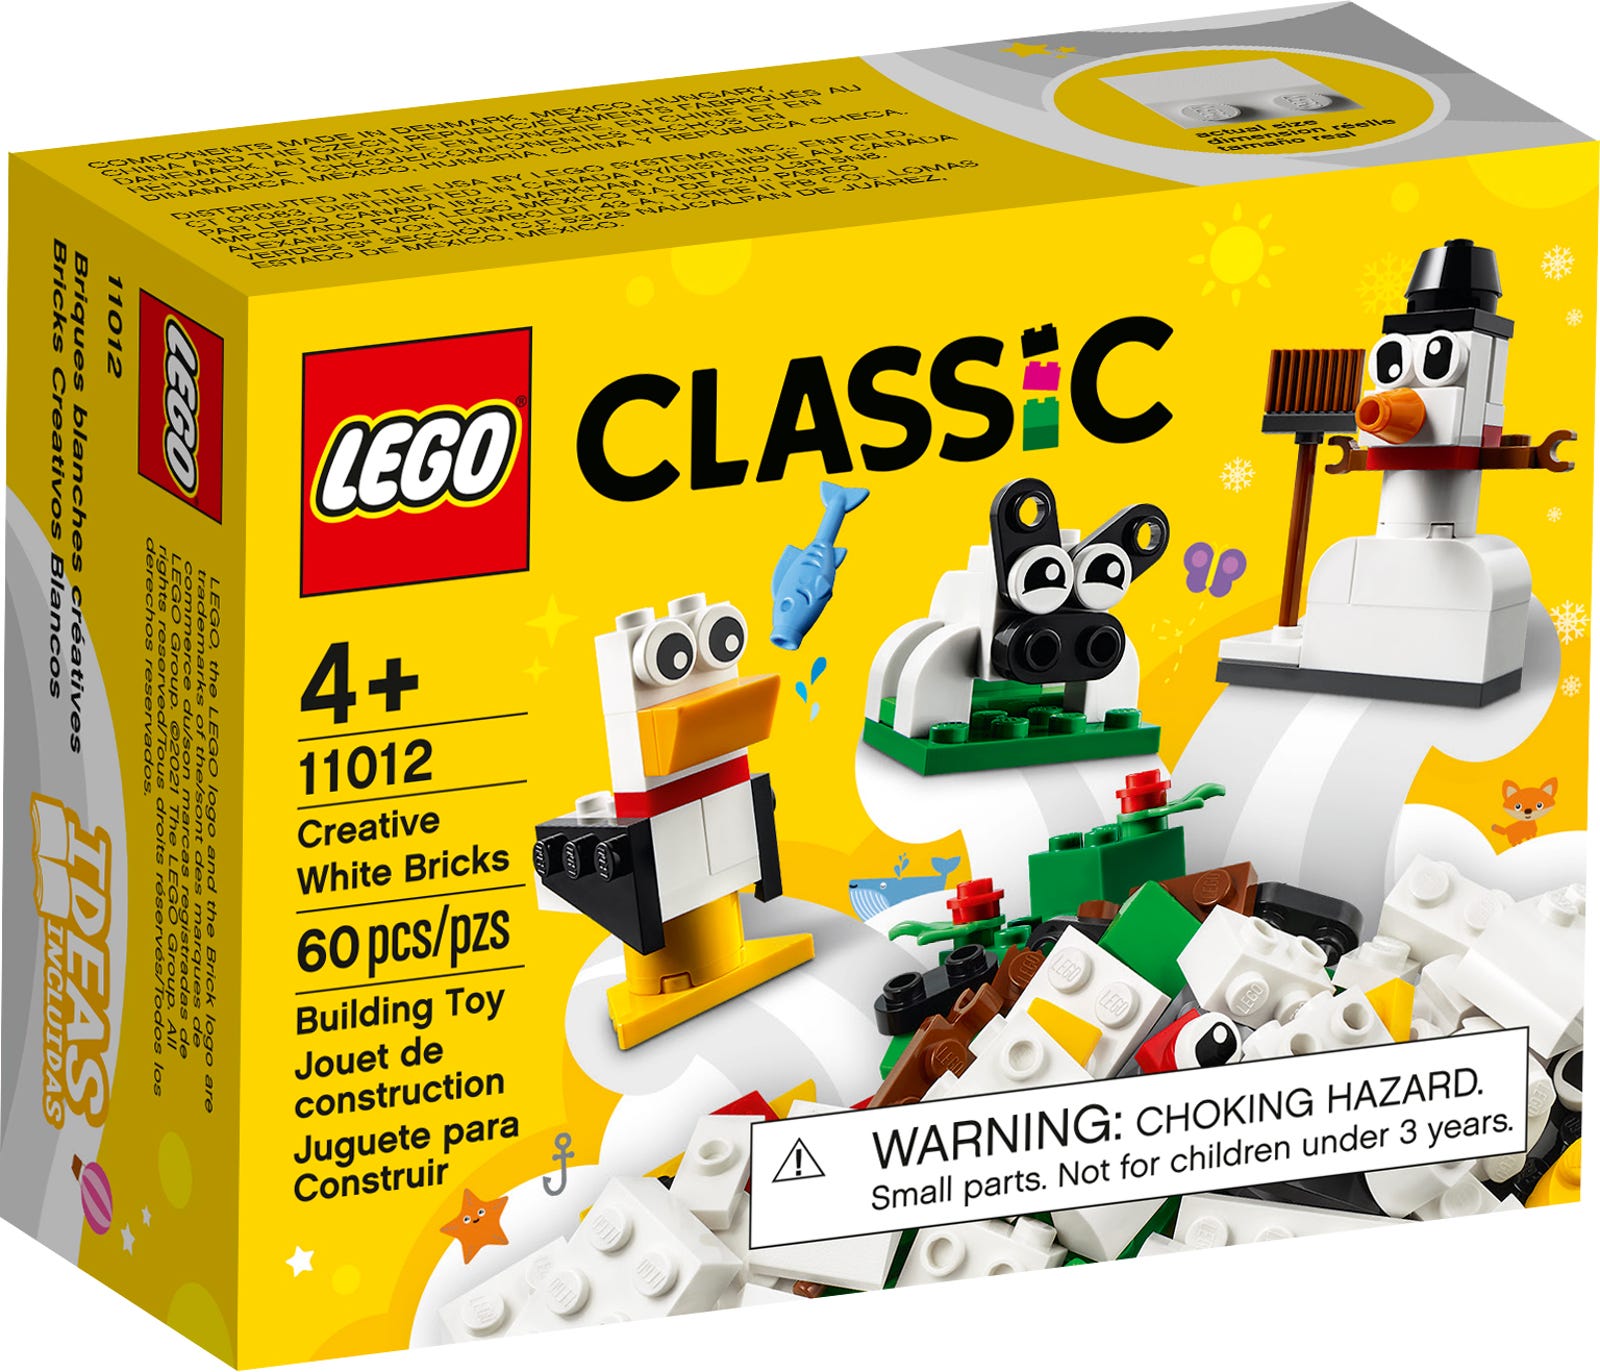 Lego Classic – Briques créatives blanches – 11012 – Janîmes